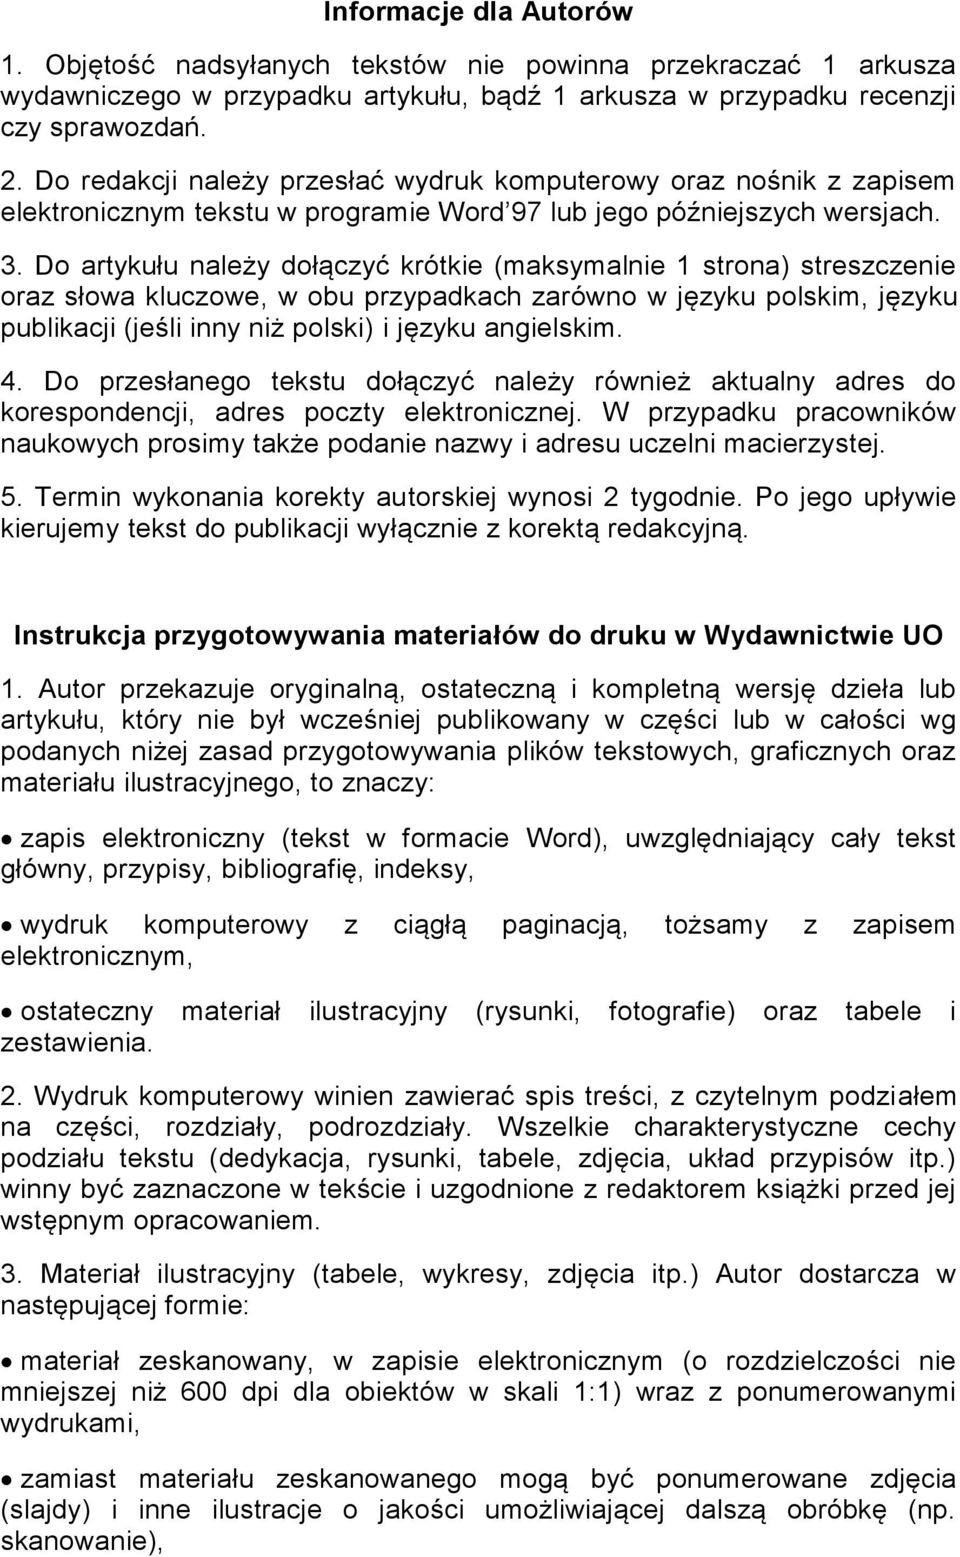 Do artykułu należy dołączyć krótkie (maksymalnie 1 strona) streszczenie oraz słowa kluczowe, w obu przypadkach zarówno w języku polskim, języku publikacji (jeśli inny niż polski) i języku angielskim.